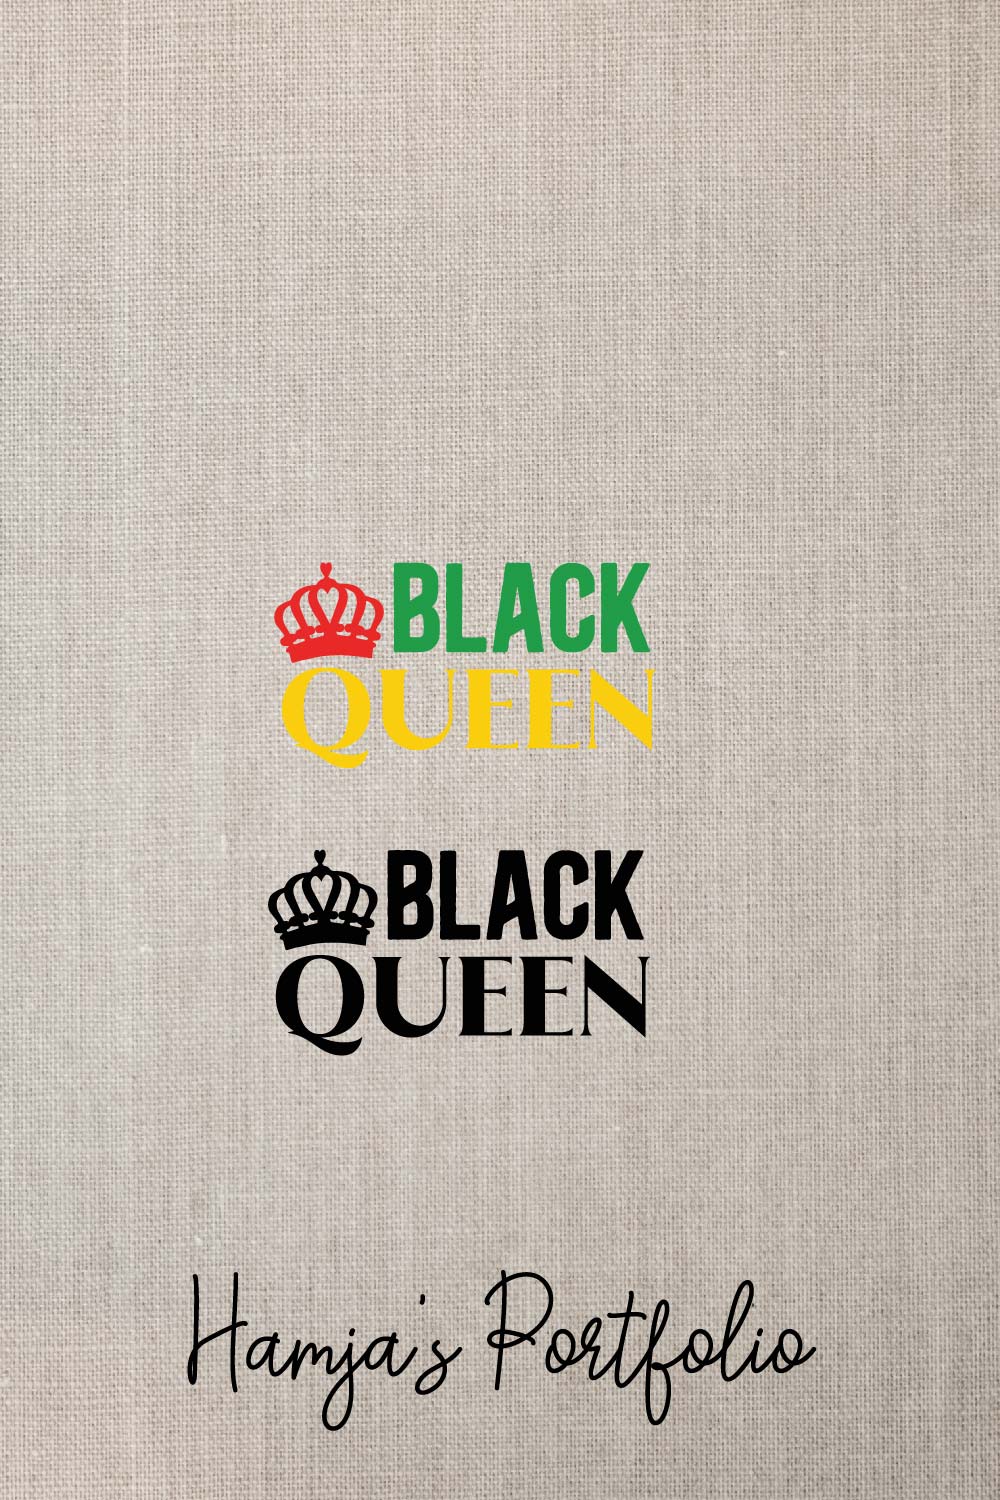 Black Queen Vector pinterest preview image.